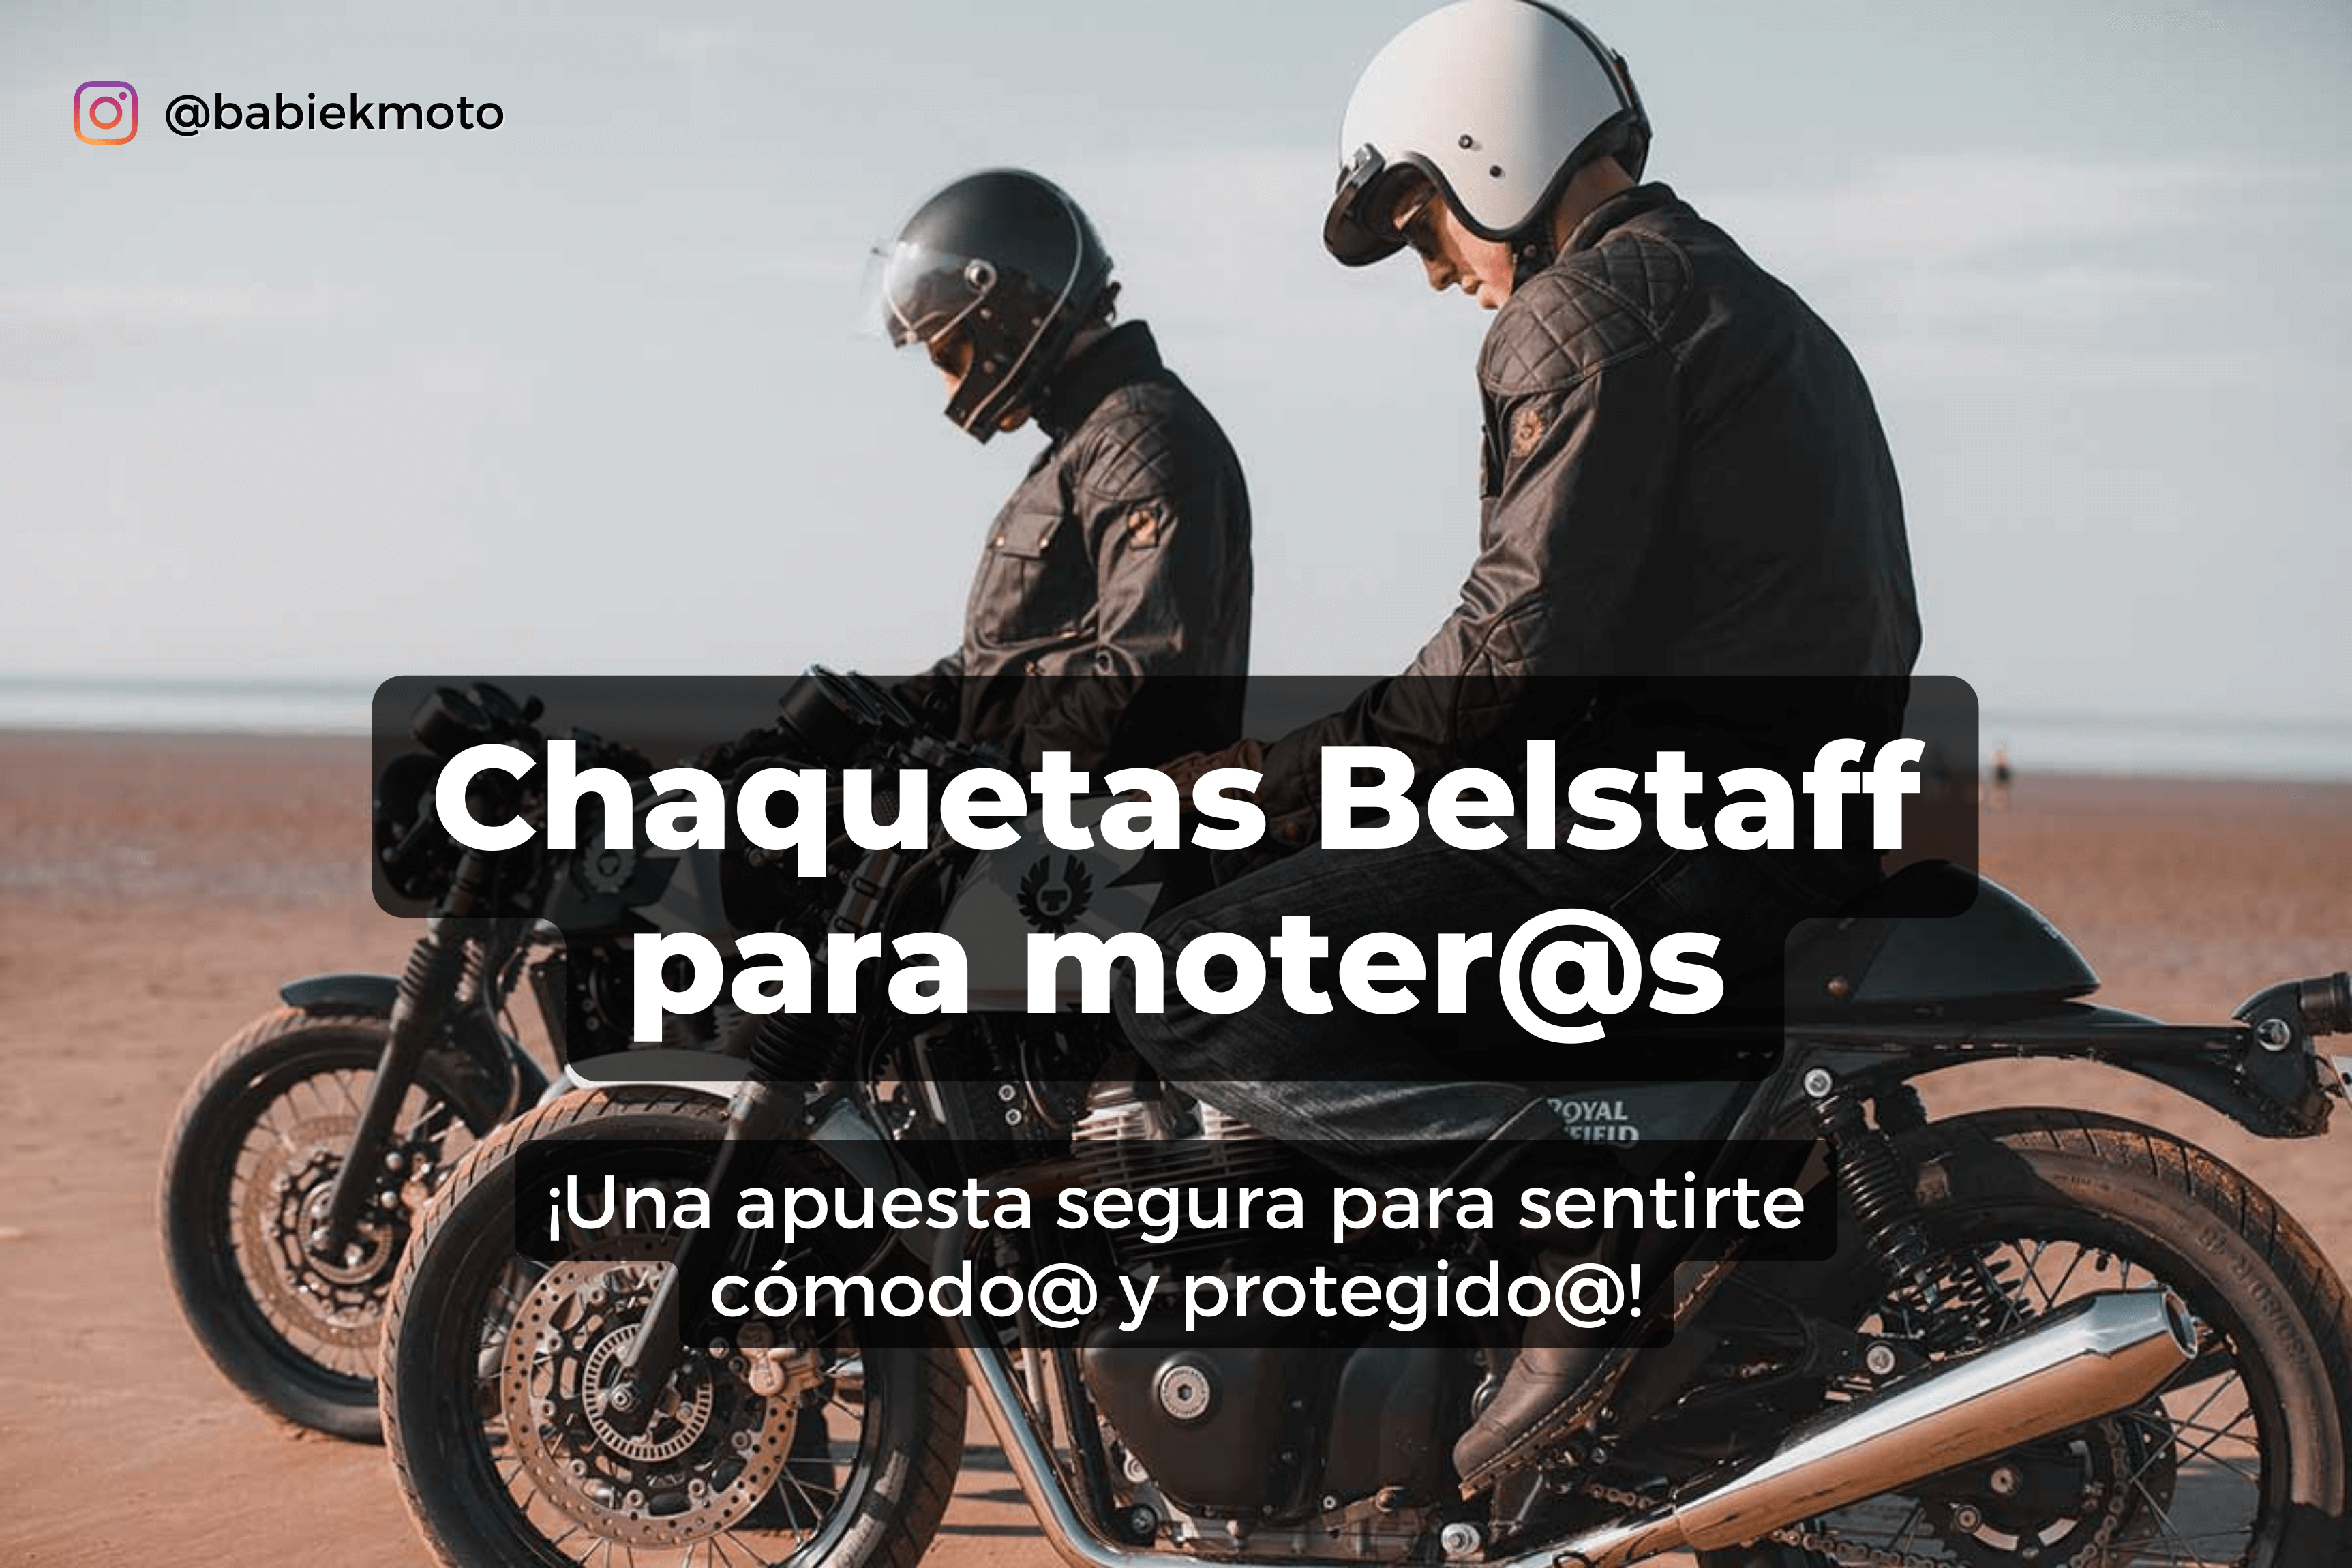 Chaquetas Belstaff para motoristas: una apuesta segura para sentirte cómodo y protegido